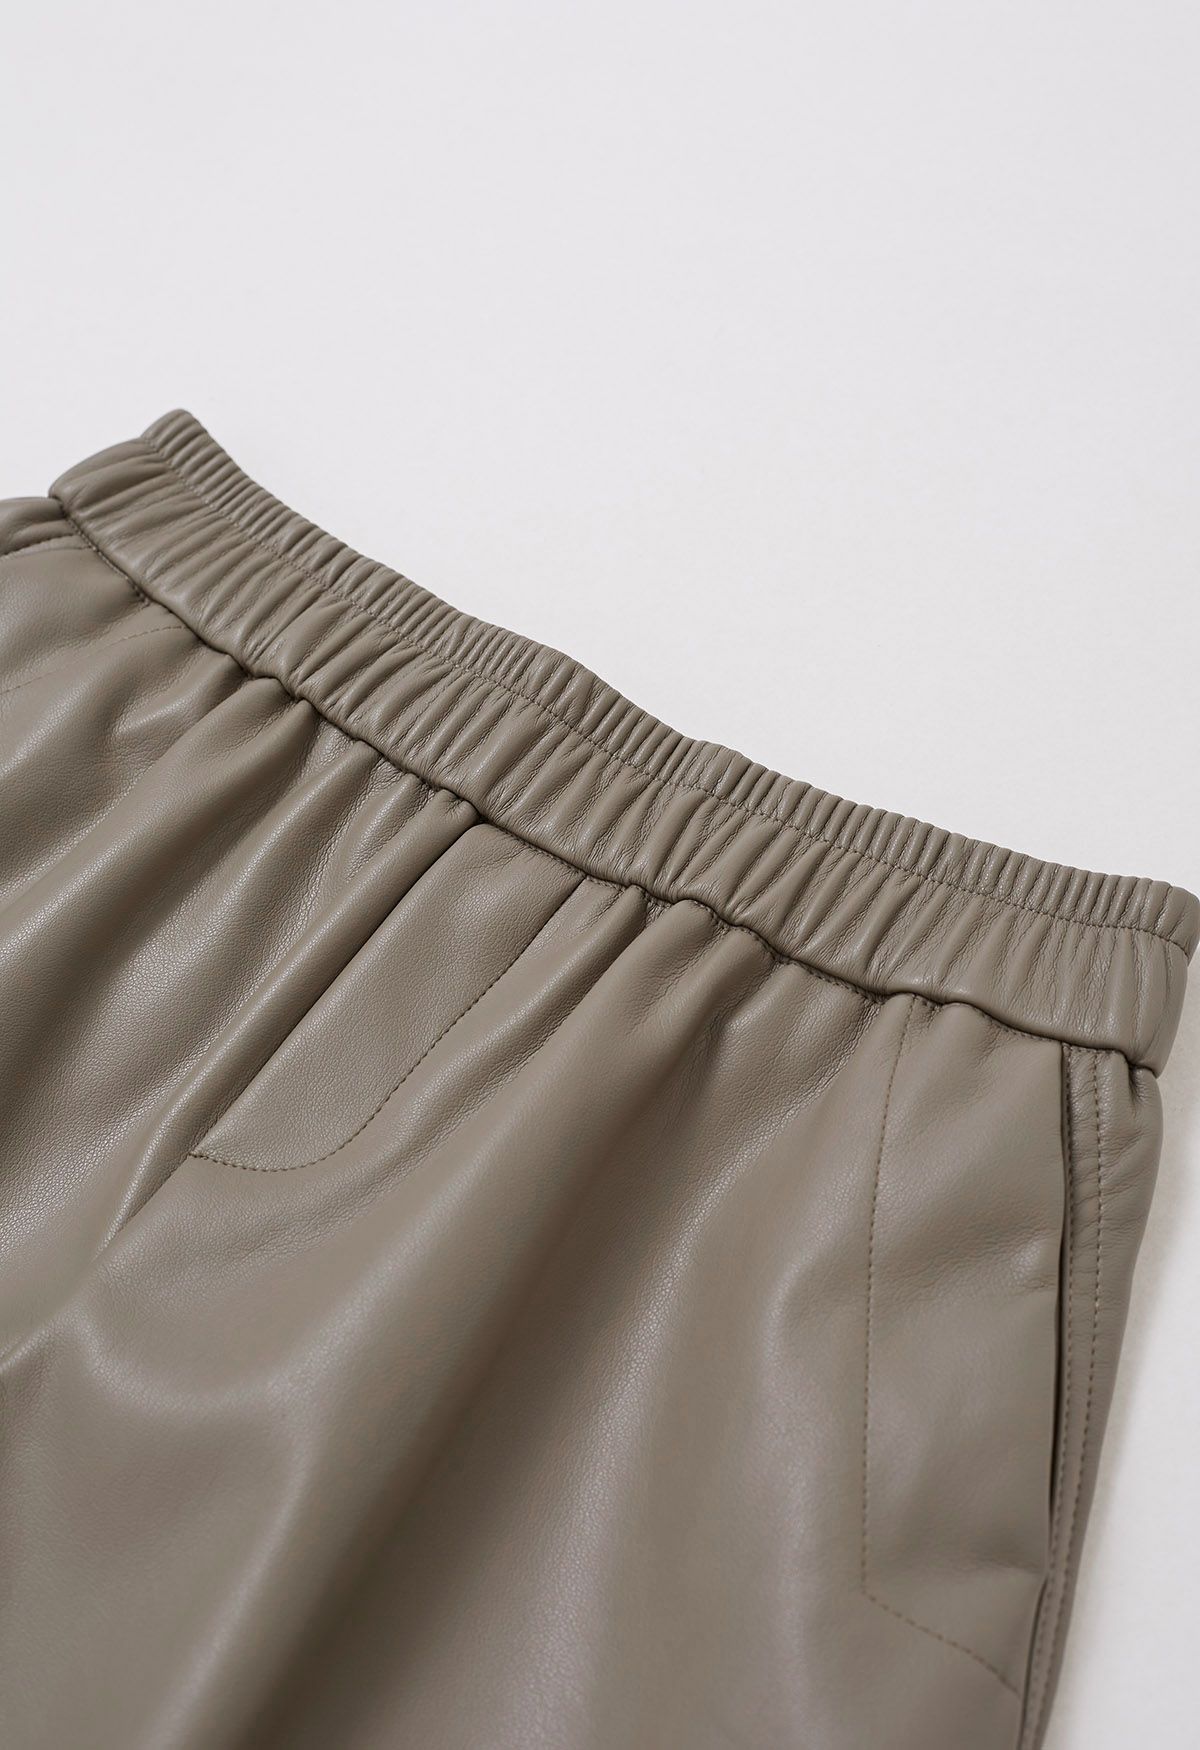 Shorts de piel sintética con dobladillo en contraste en color topo